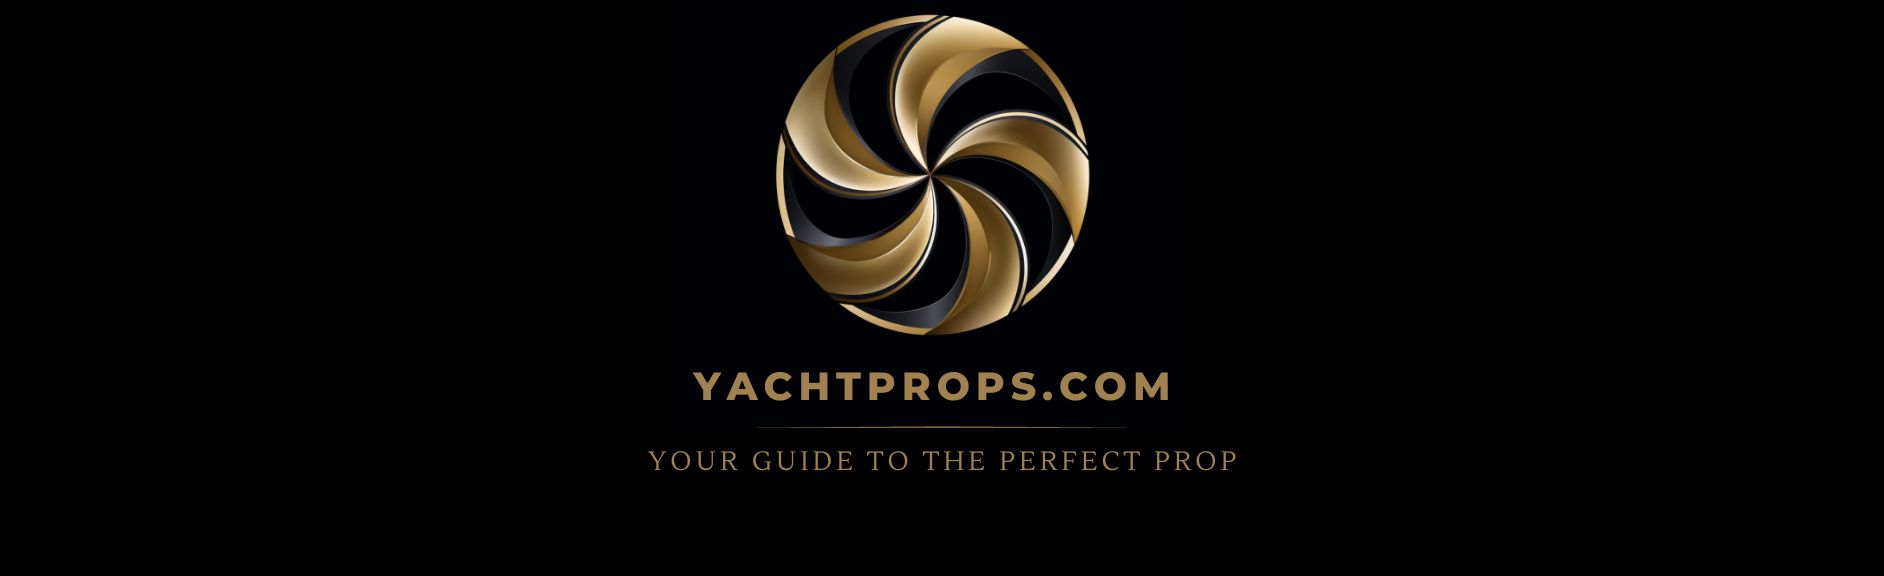 YachtProps.com